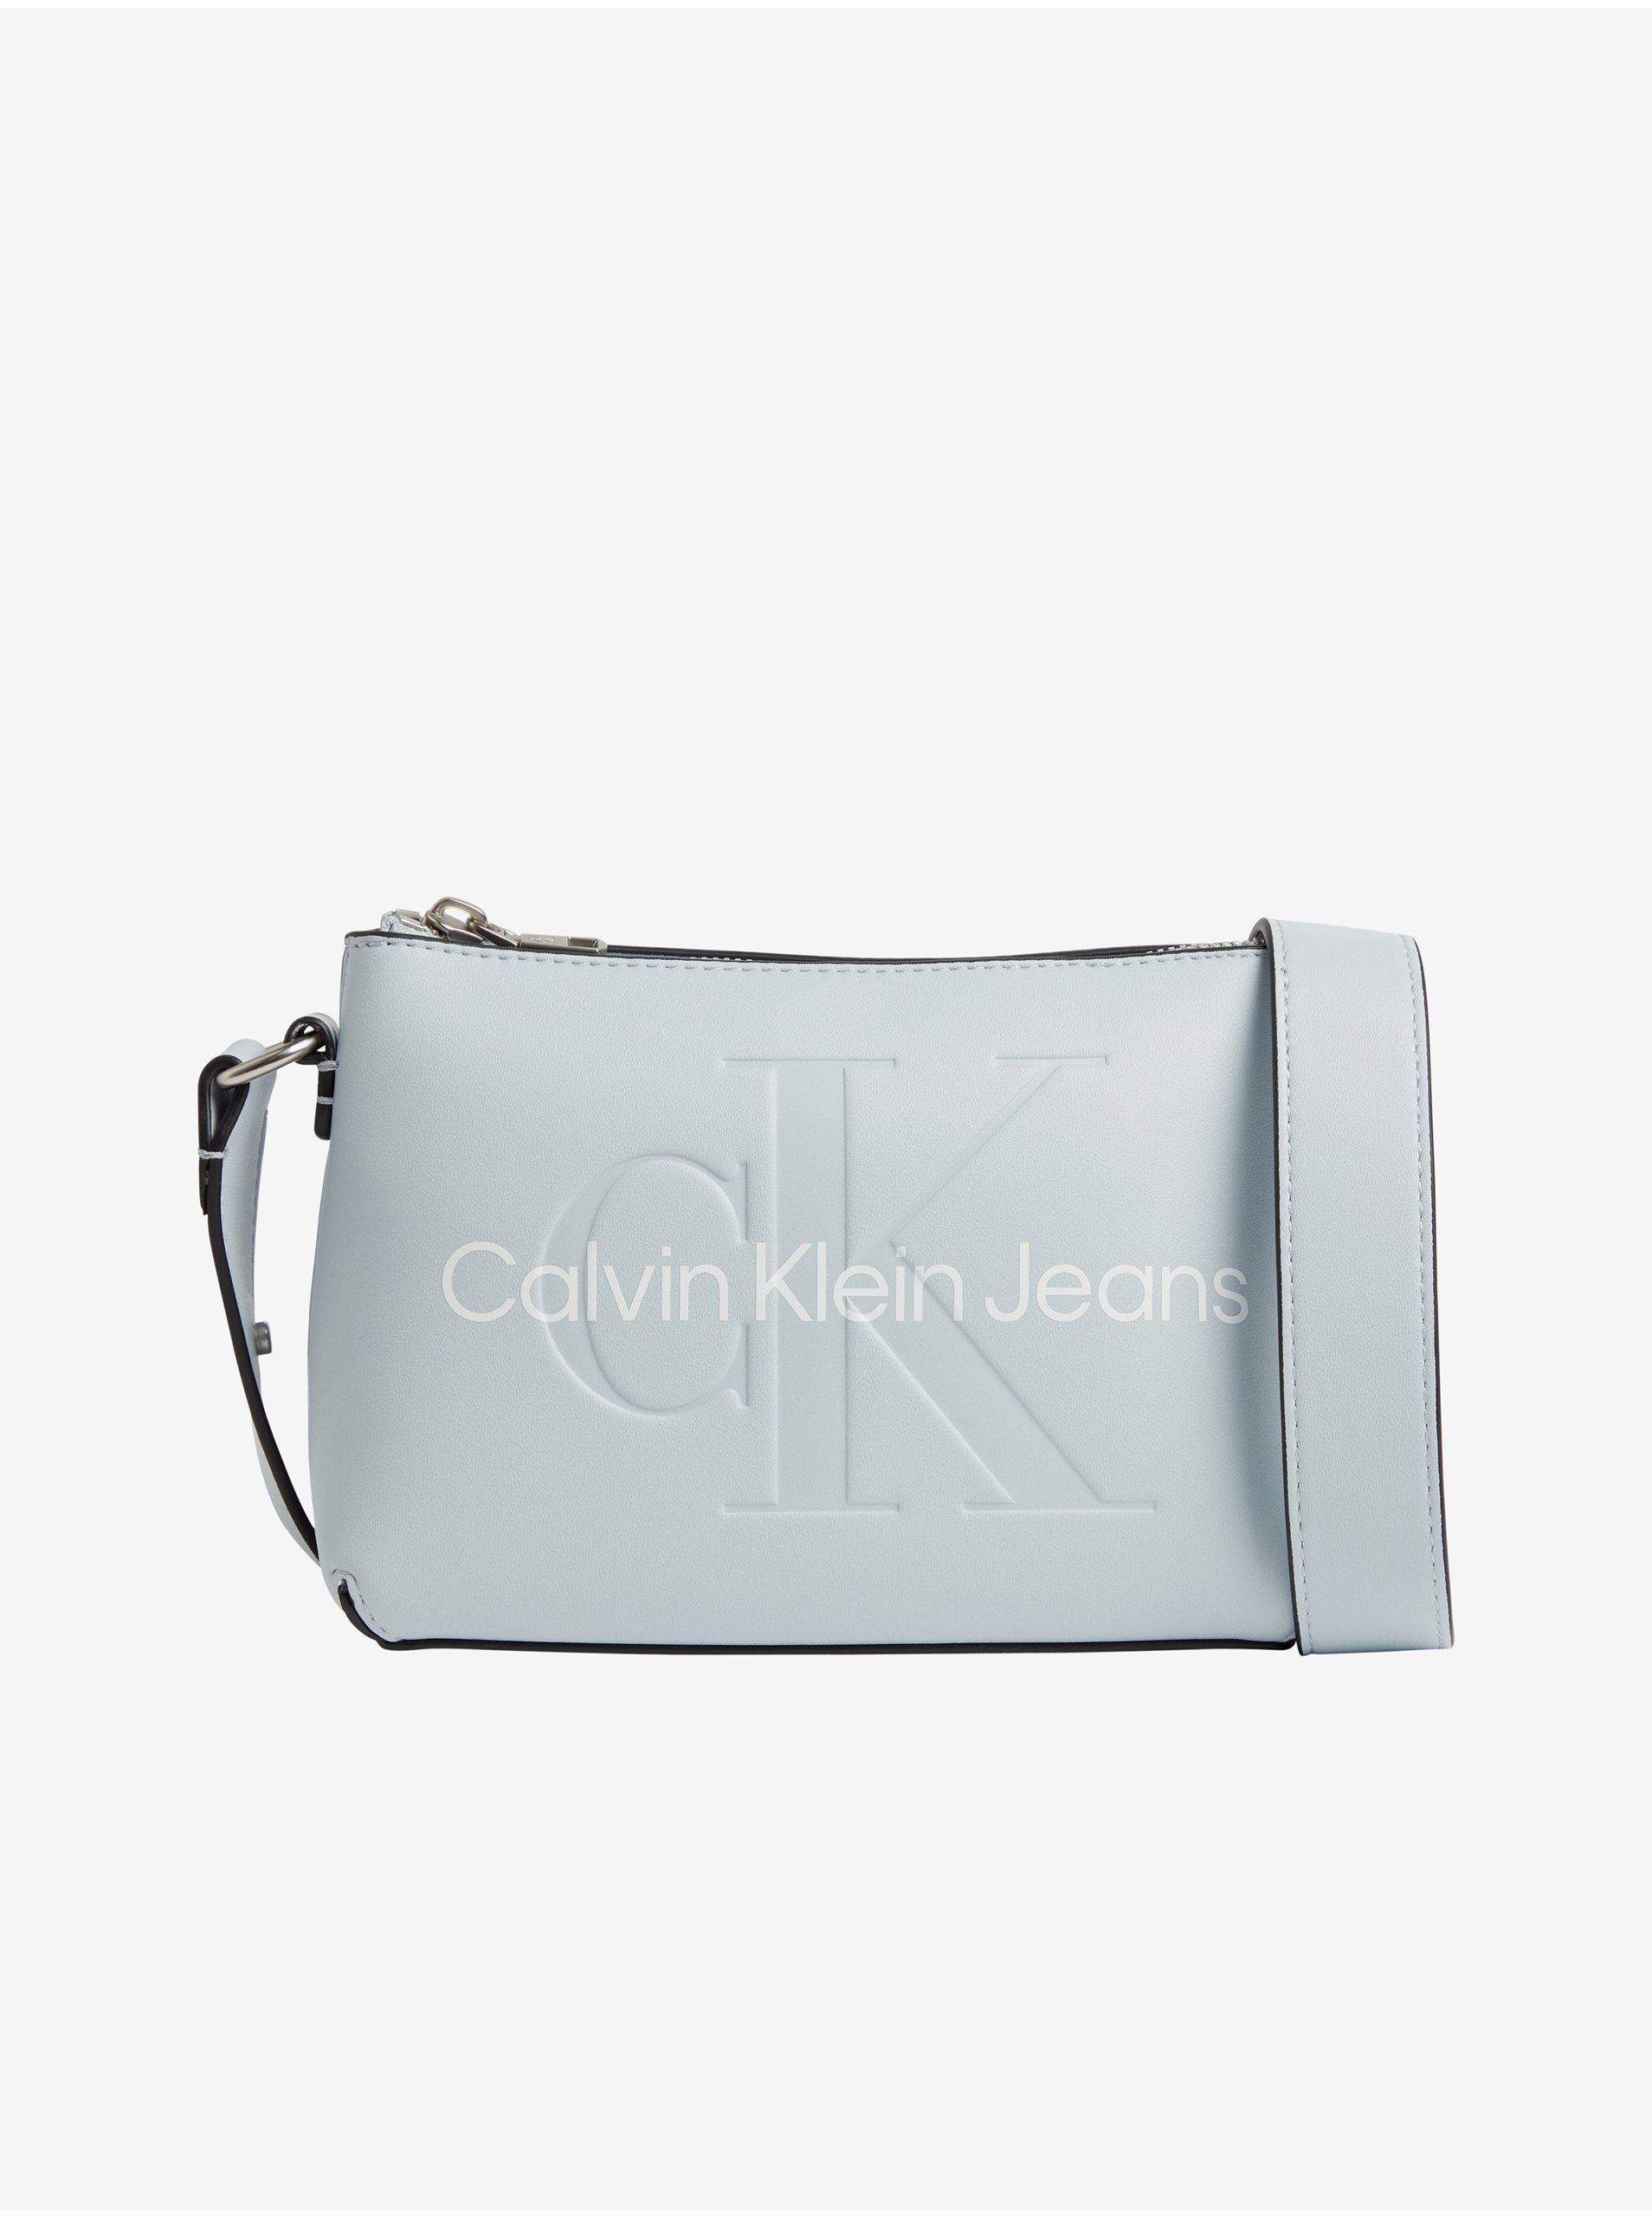 Lacno Kabelky pre ženy Calvin Klein Jeans - svetlomodrá